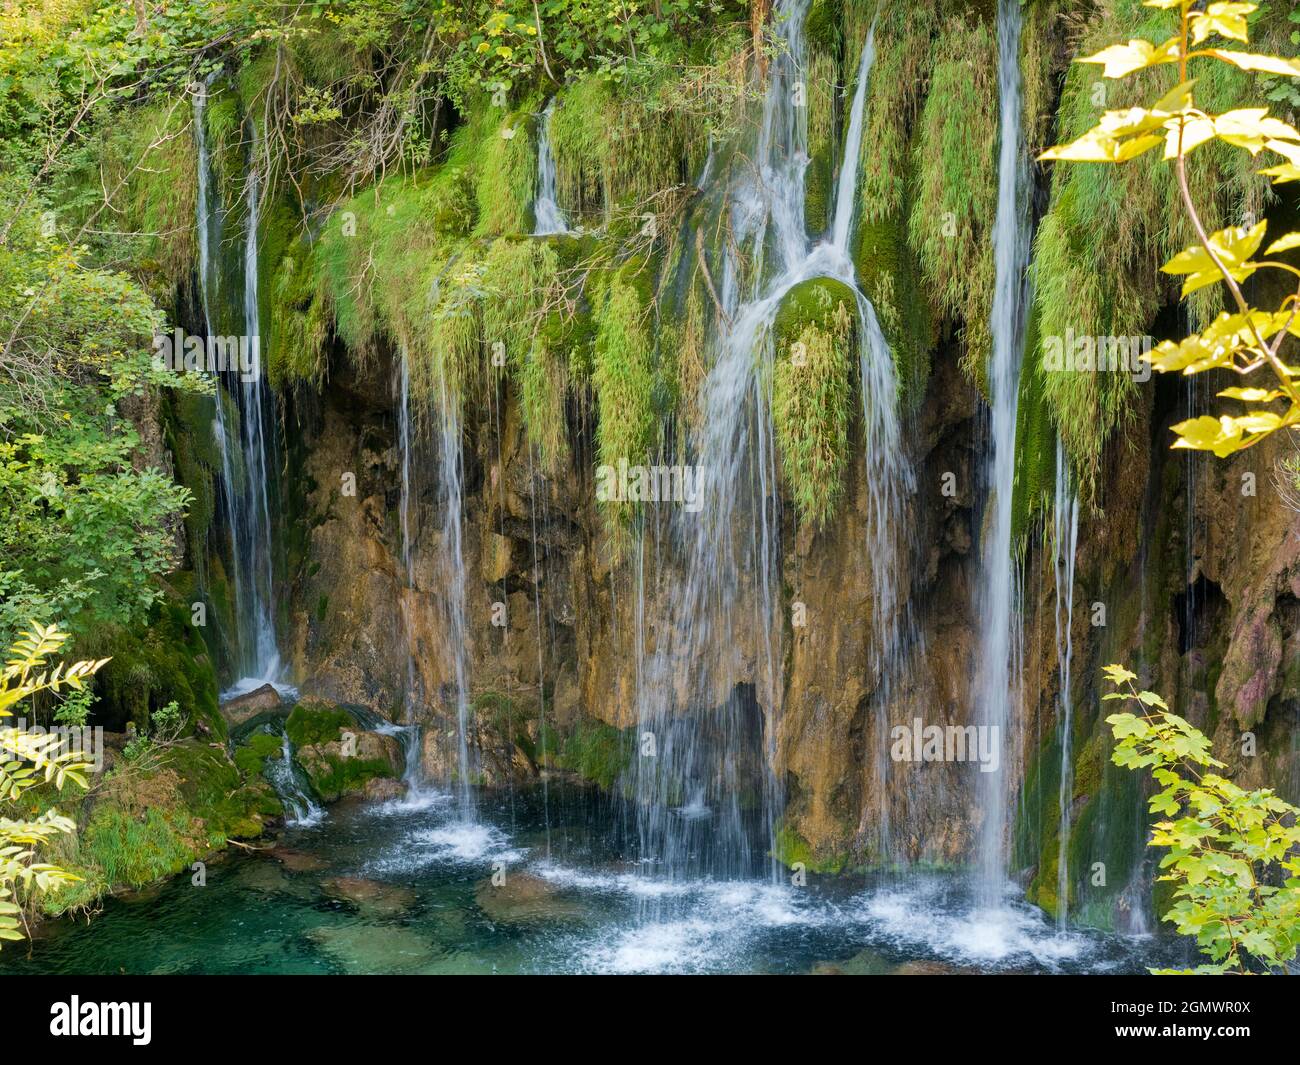 El Parque Nacional de los Lagos de Plitvice, declarado Patrimonio de la Humanidad por la UNESCO, es uno de los parques nacionales más antiguos del sudeste de Europa y el más grande de Croacia. Lo ha hecho Foto de stock